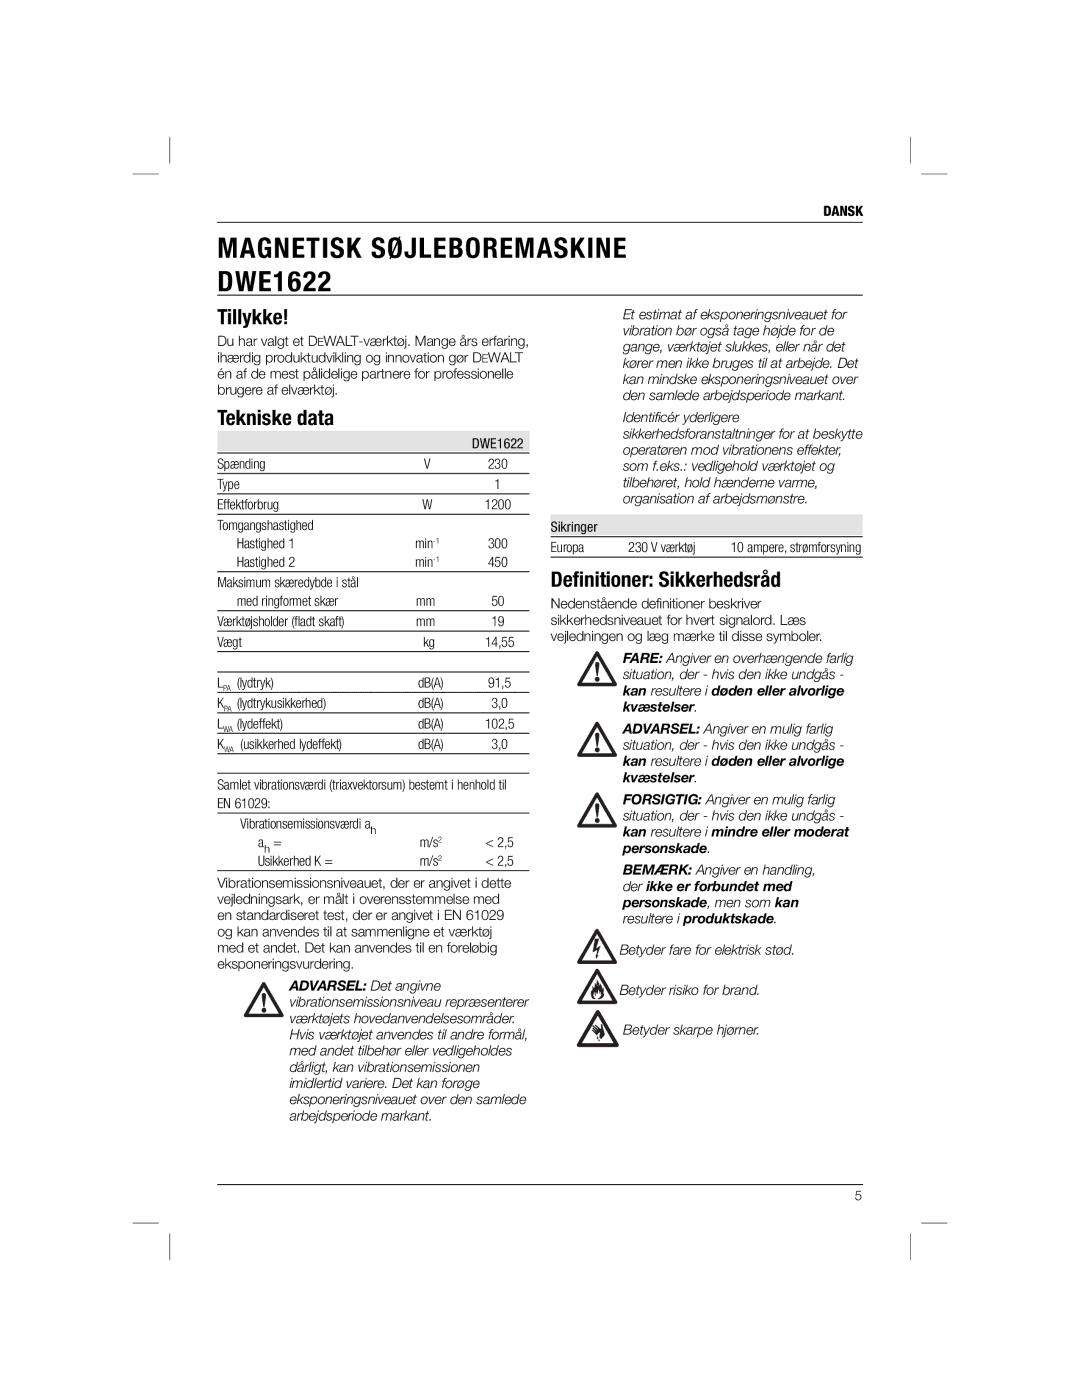 DeWalt DWE1622K manual Tillykke, Tekniske data, Deﬁnitioner Sikkerhedsråd, Dansk 